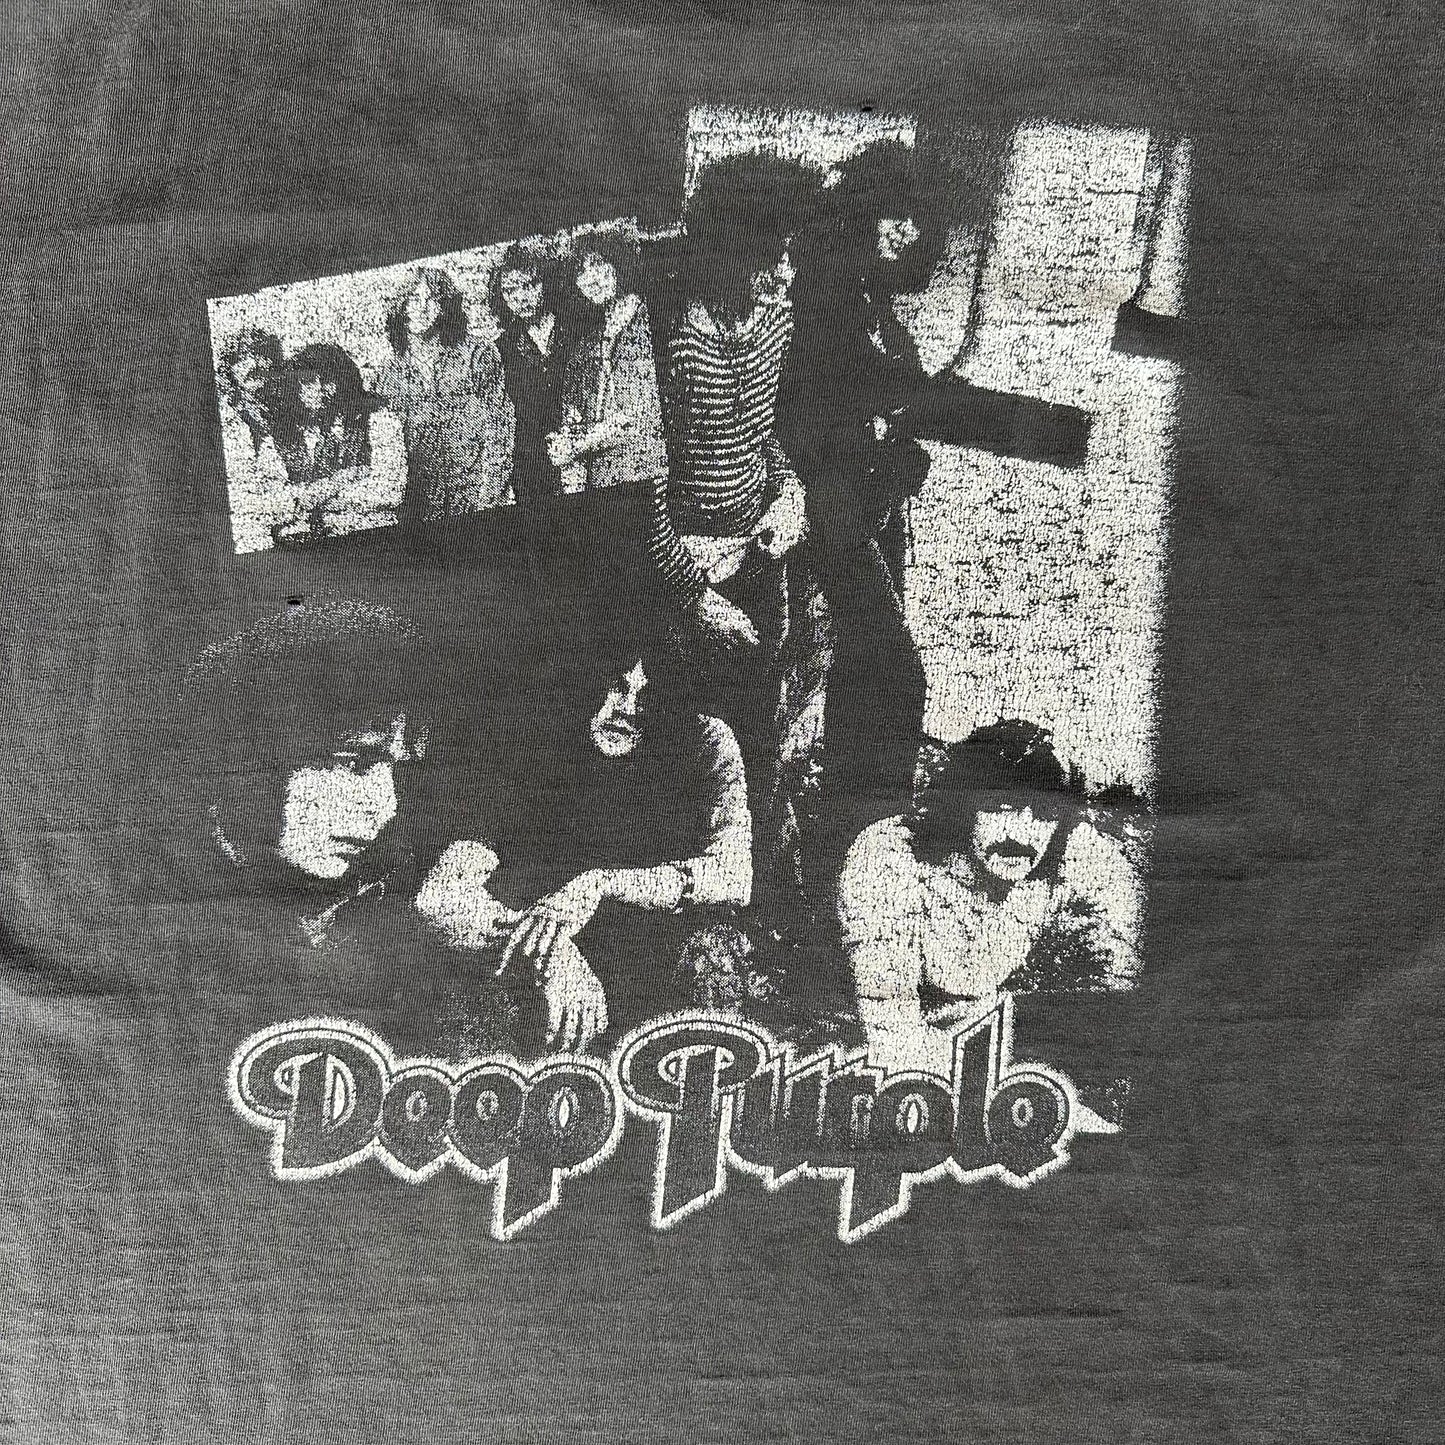 Vintage Deep Purple T-Shirt